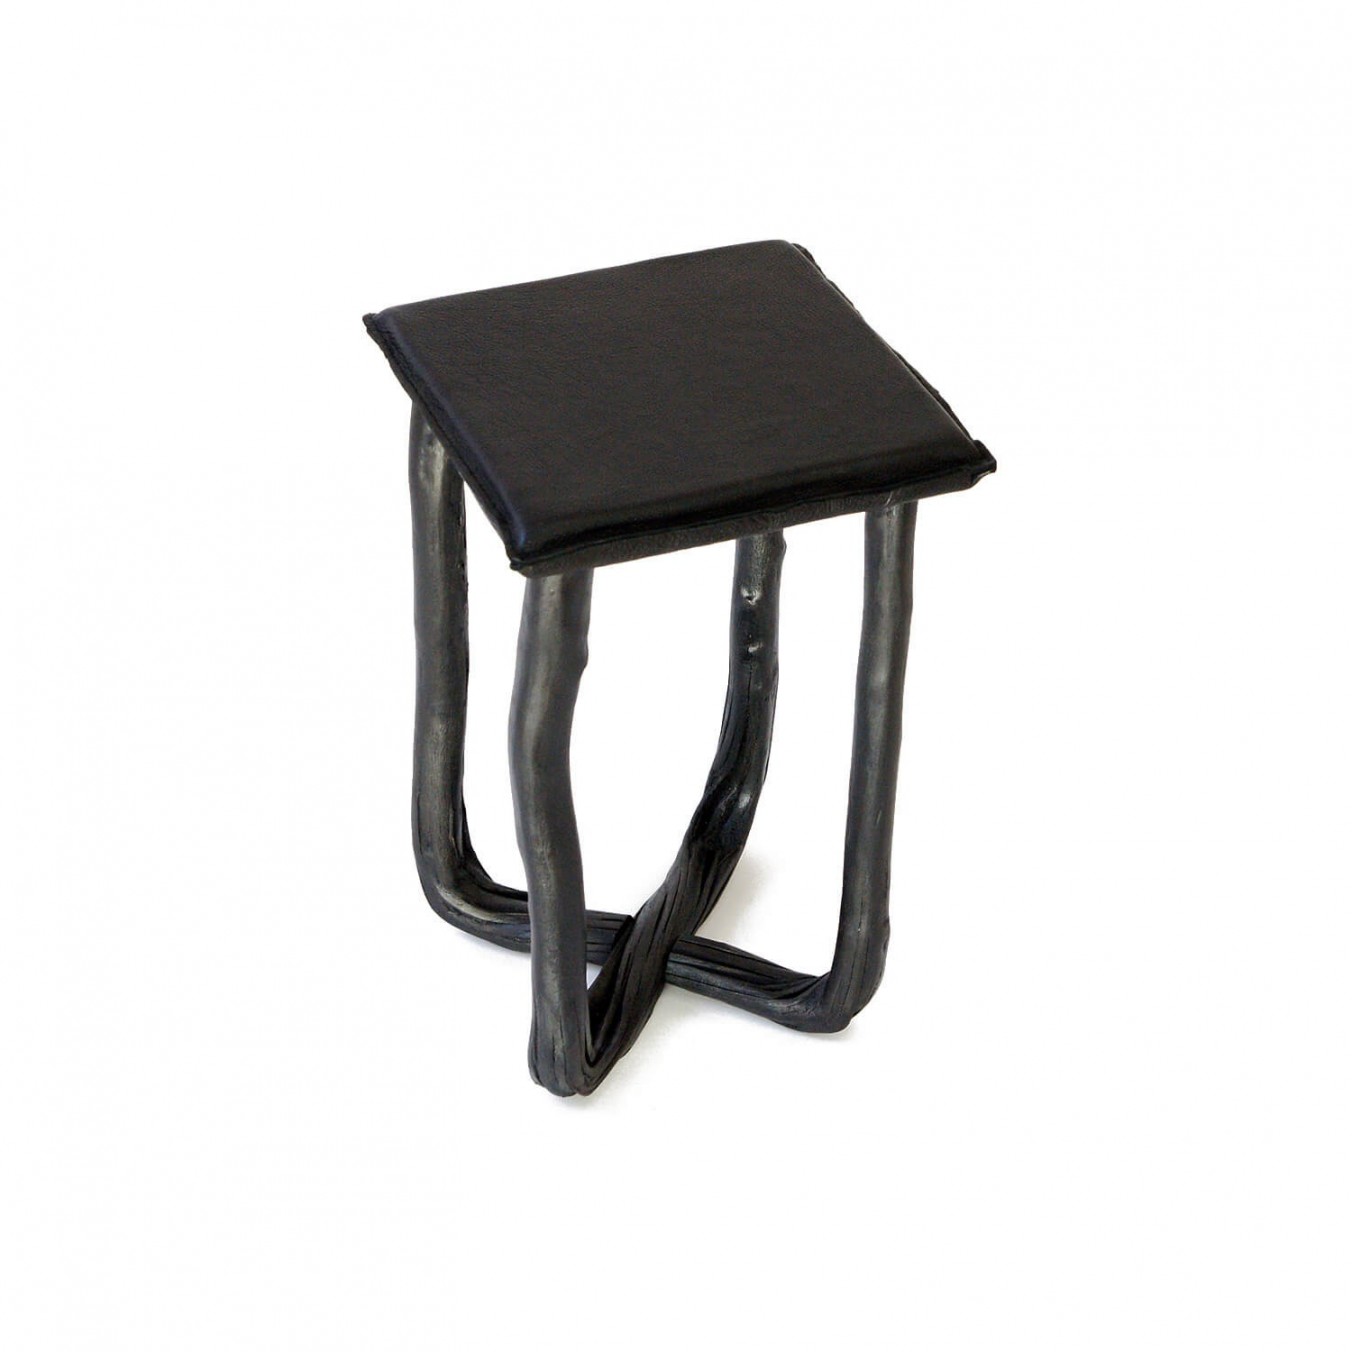 Pressed wood stool